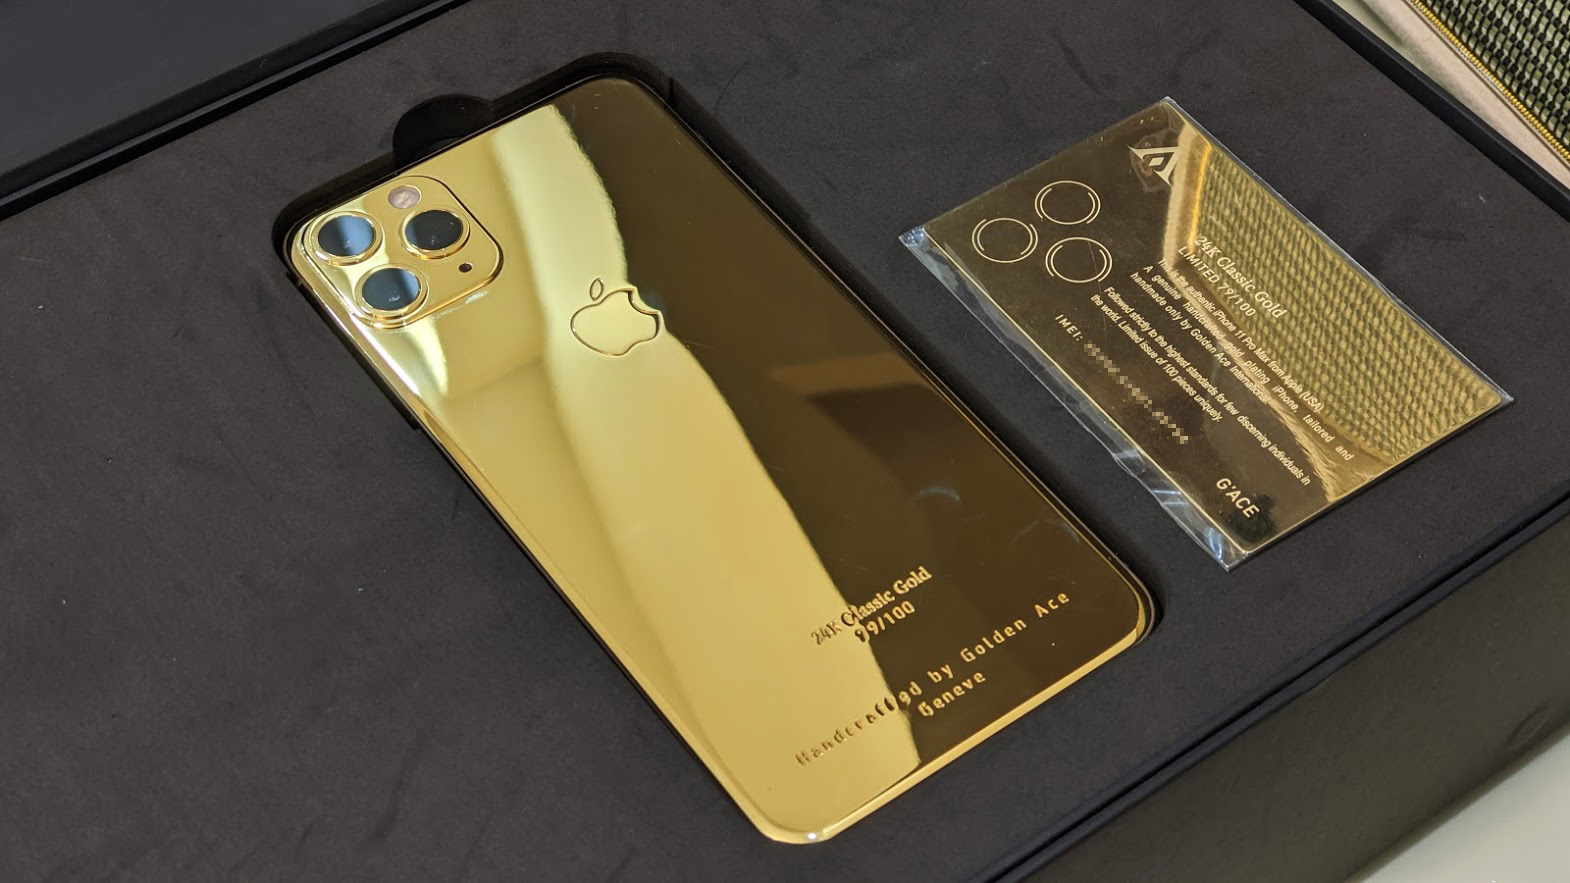 iPhone 11 Pro Max mạ vàng: Bạn muốn sở hữu một chiếc điện thoại sang trọng và đẳng cấp? Hãy đến và chiêm ngưỡng ngay hình ảnh iPhone 11 Pro Max mạ vàng. Thiết kế đẹp mắt cùng chất lượng tuyệt đỉnh của Apple chắc chắn sẽ khiến bạn hài lòng.